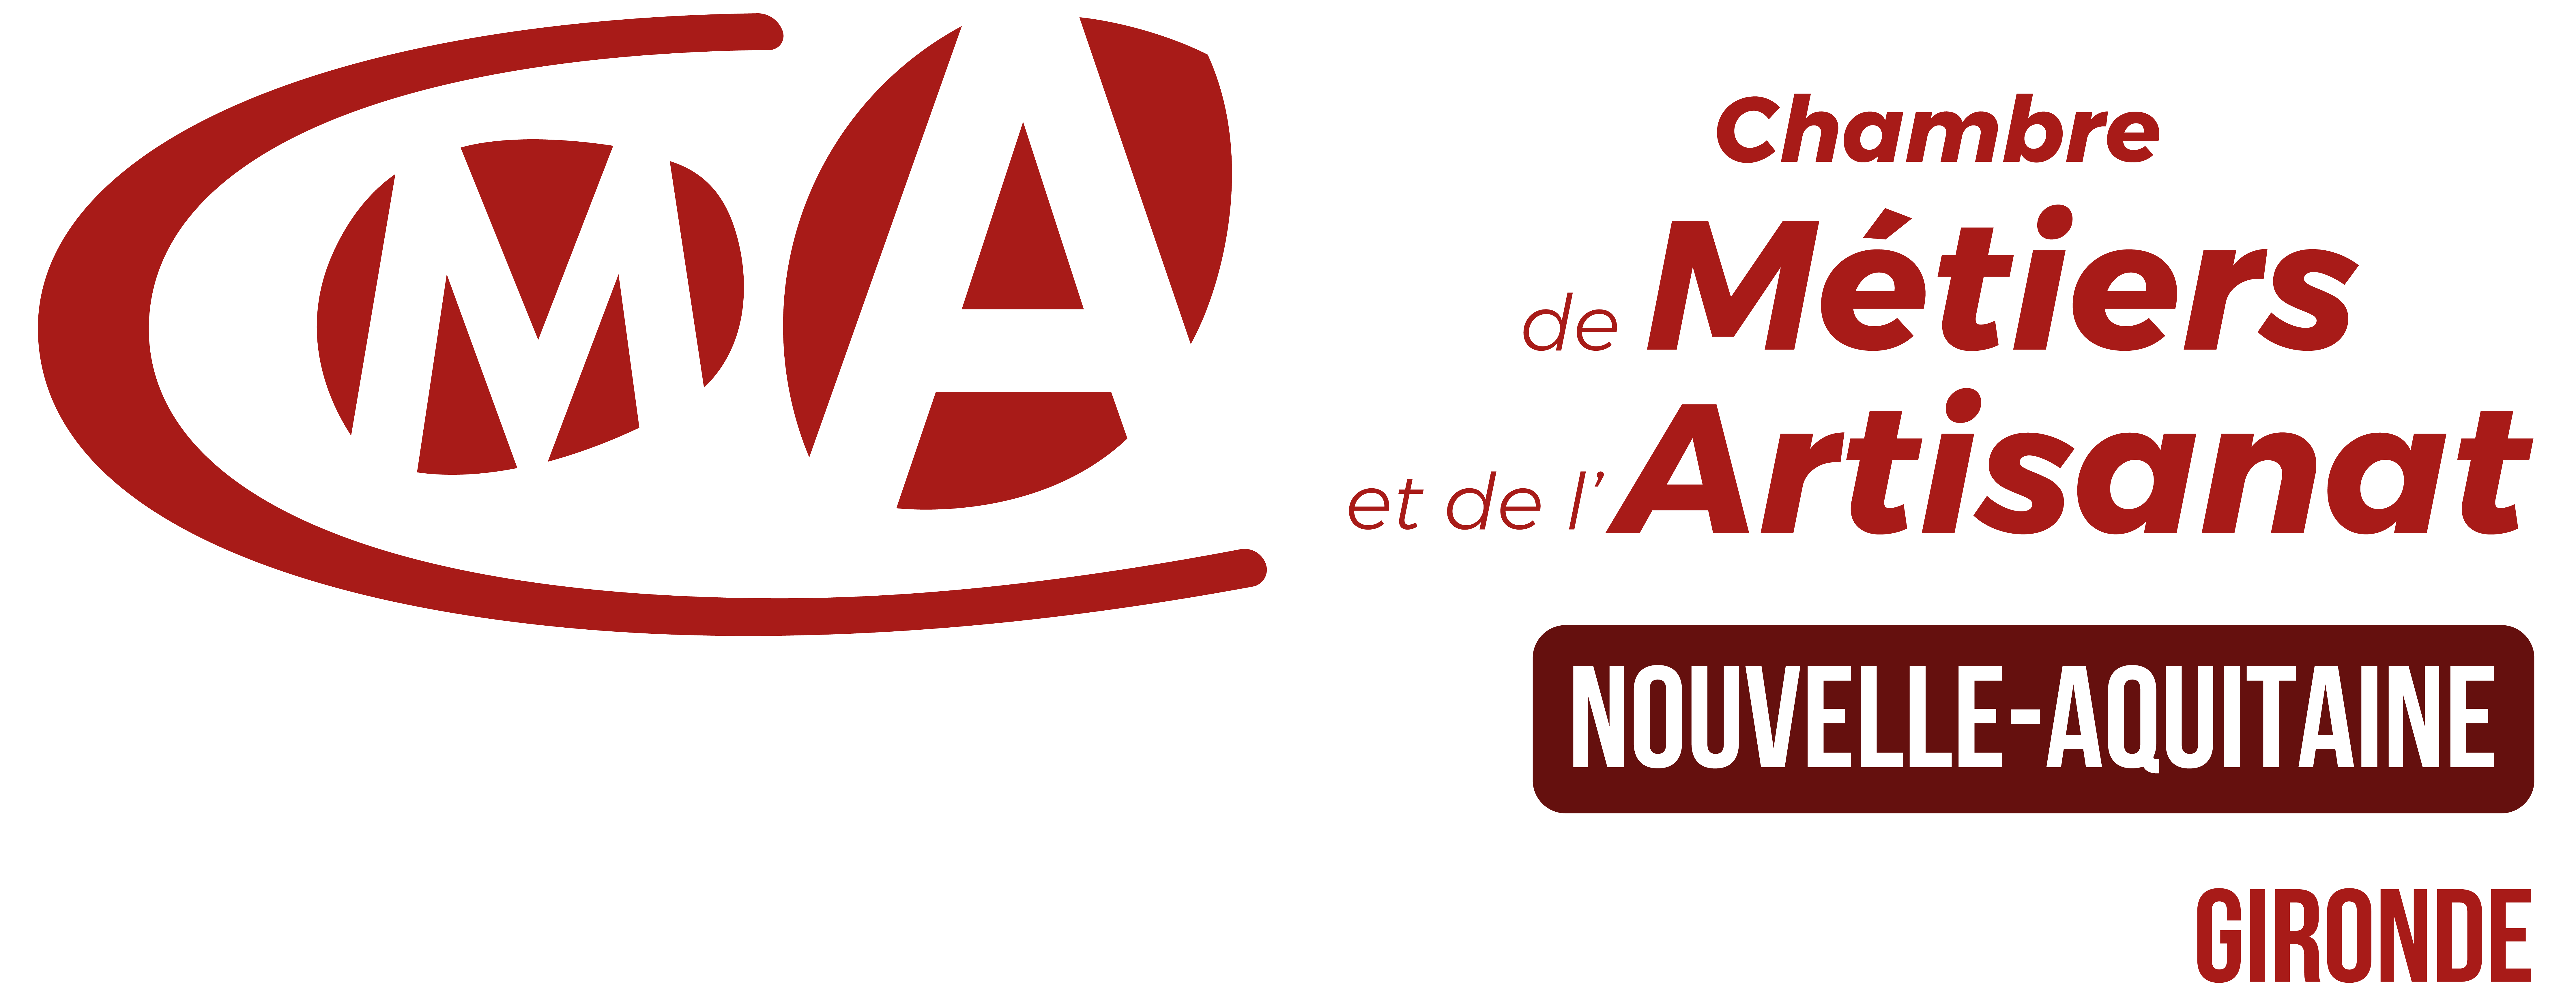 Logo CMA NA 33 Chambre de Métiers et de l'Artisanat Nouvelle-Aquitaine Gironde